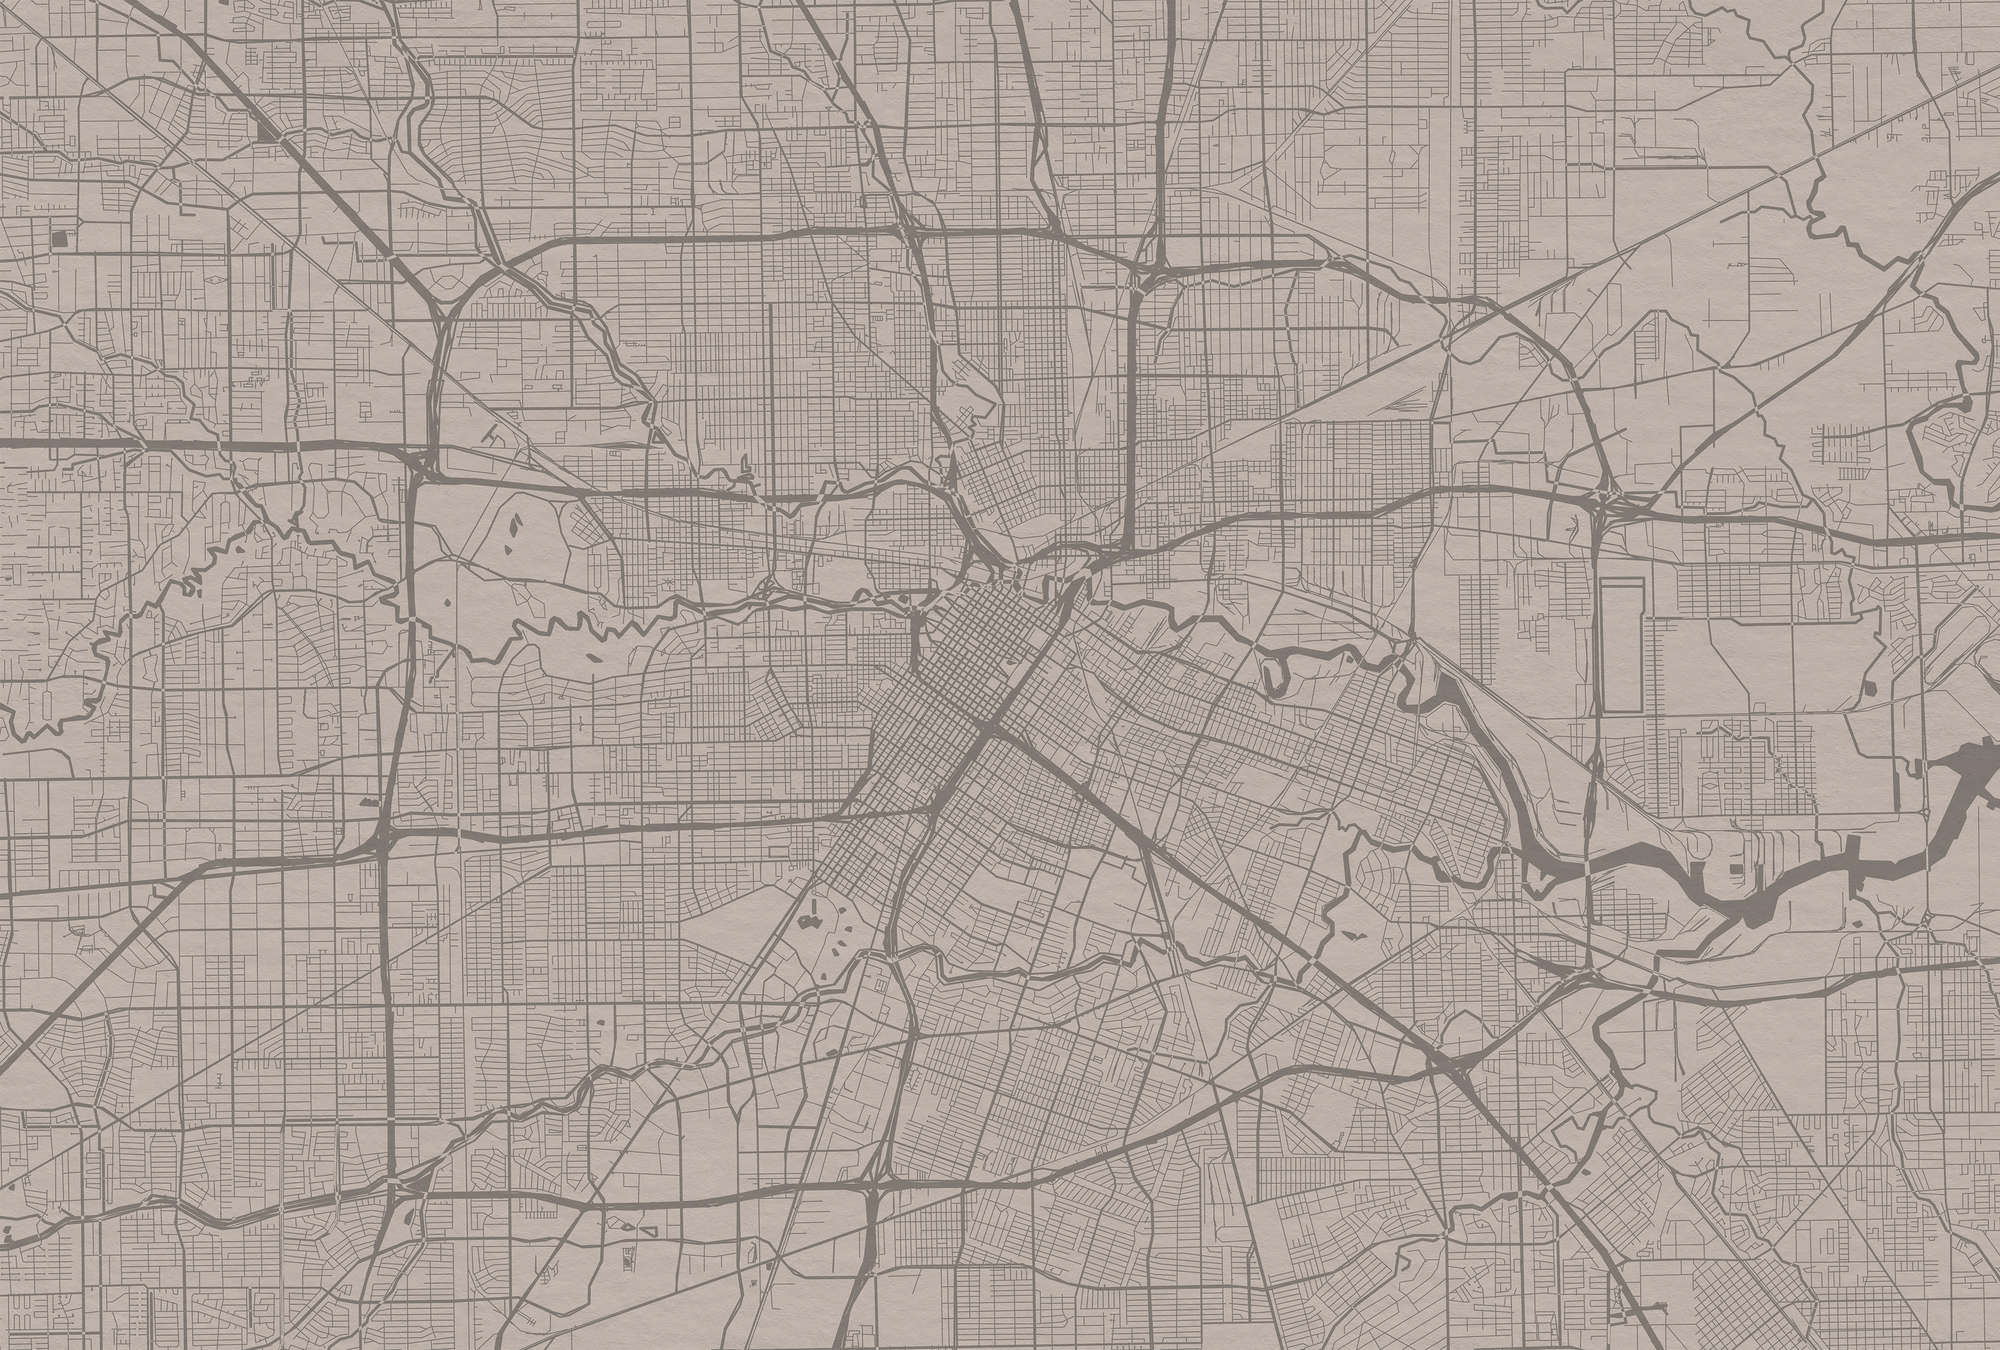             Muurschildering Stadsplattegrond met stratenplan - Grijs
        